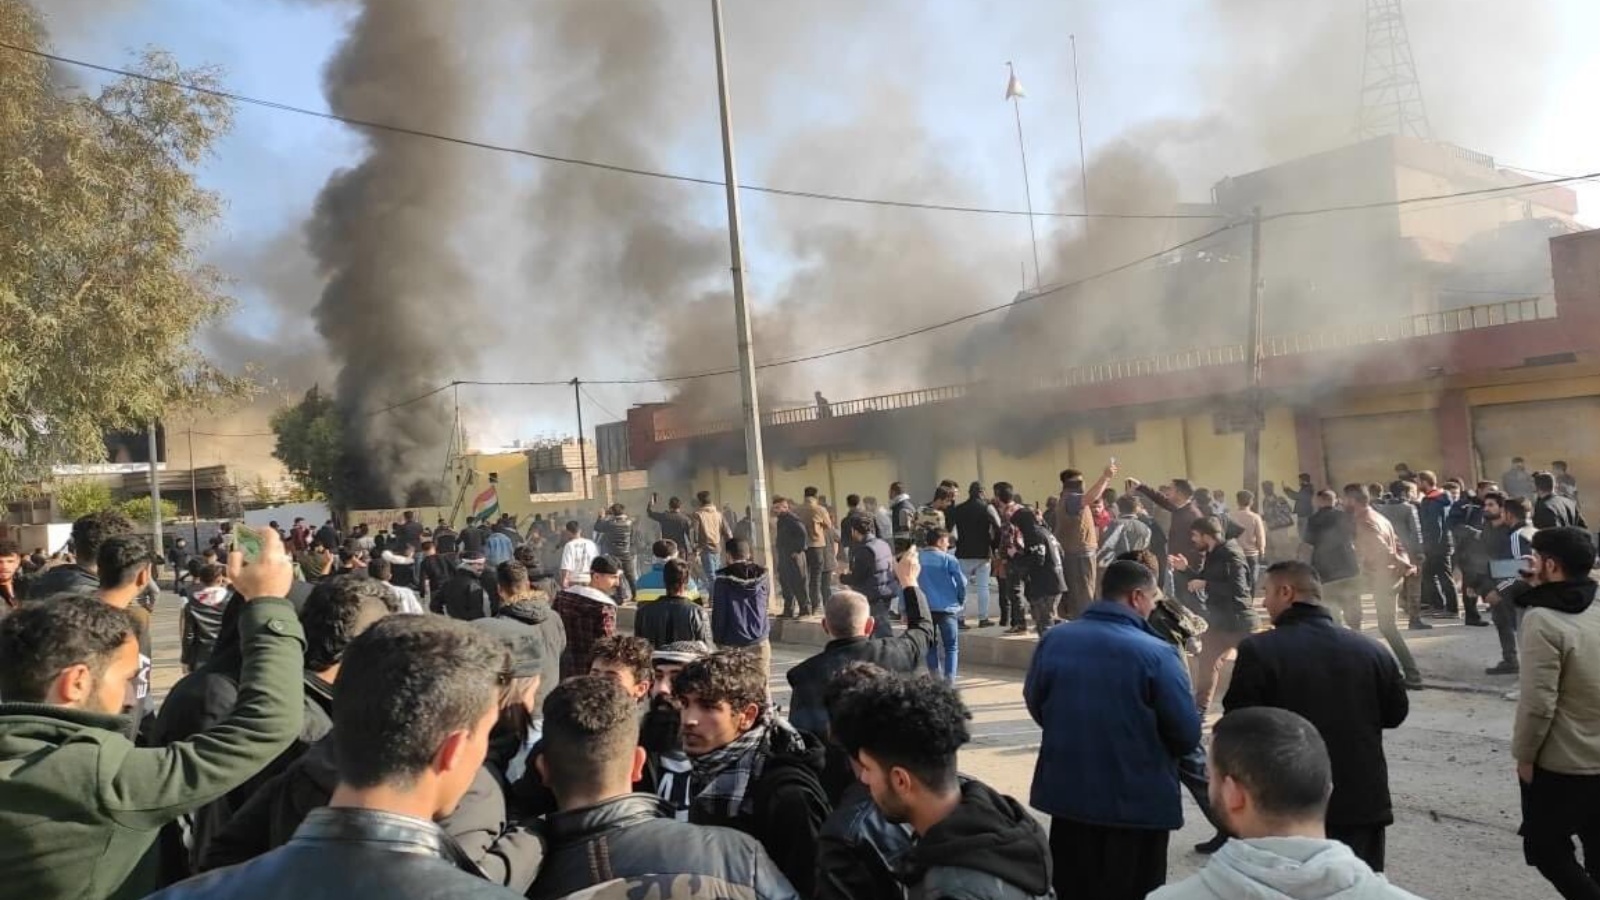 محتجون في السليمانية العراقية يضرمون النار بمقار احزاب سياسية